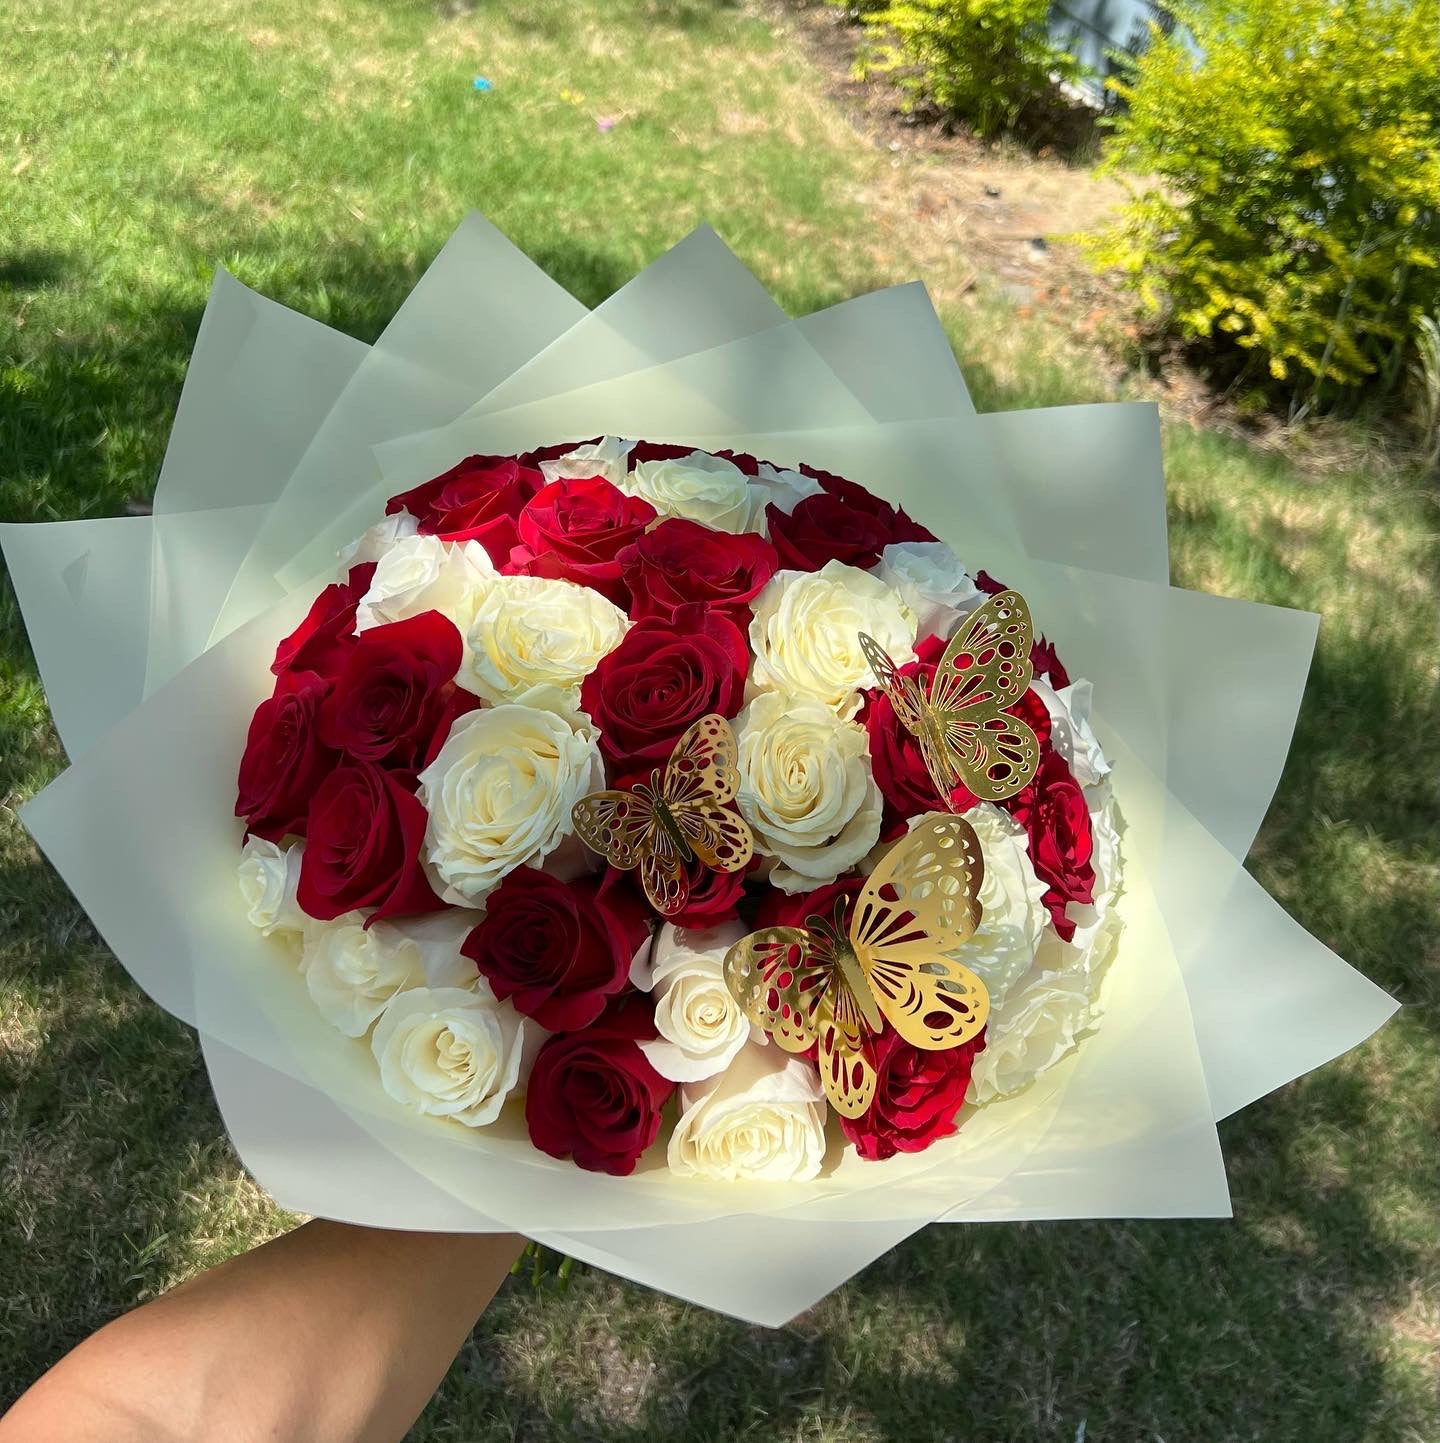 Ramo buchón de 50 rosas con corona 🌹👑 Sanford NC 📍#ramobuchon